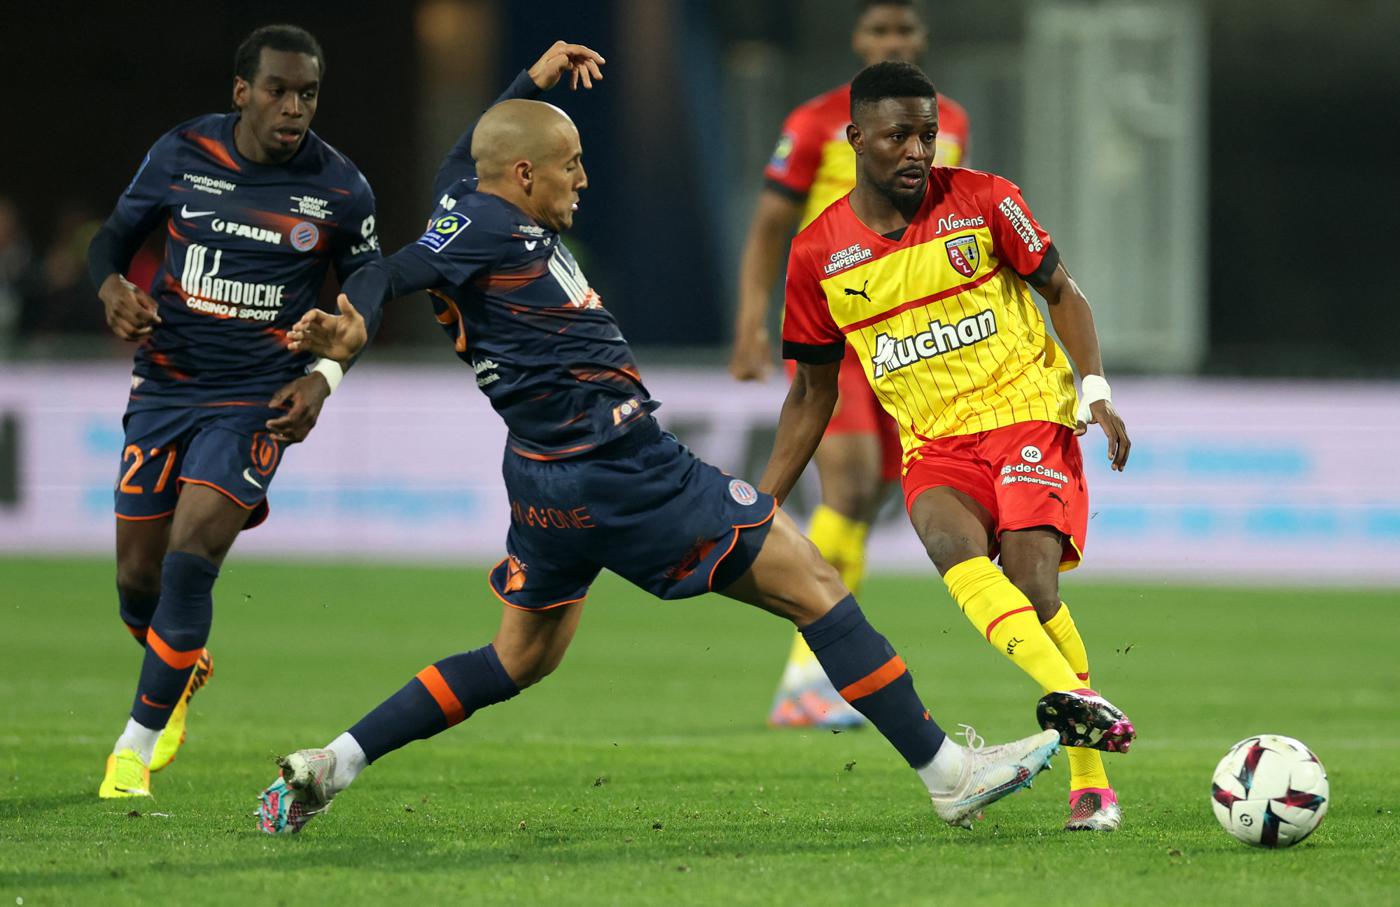 Montpellier v Lans - 1-1. Mistrzostwa Francji, runda 25. Przegląd meczu, statystyki